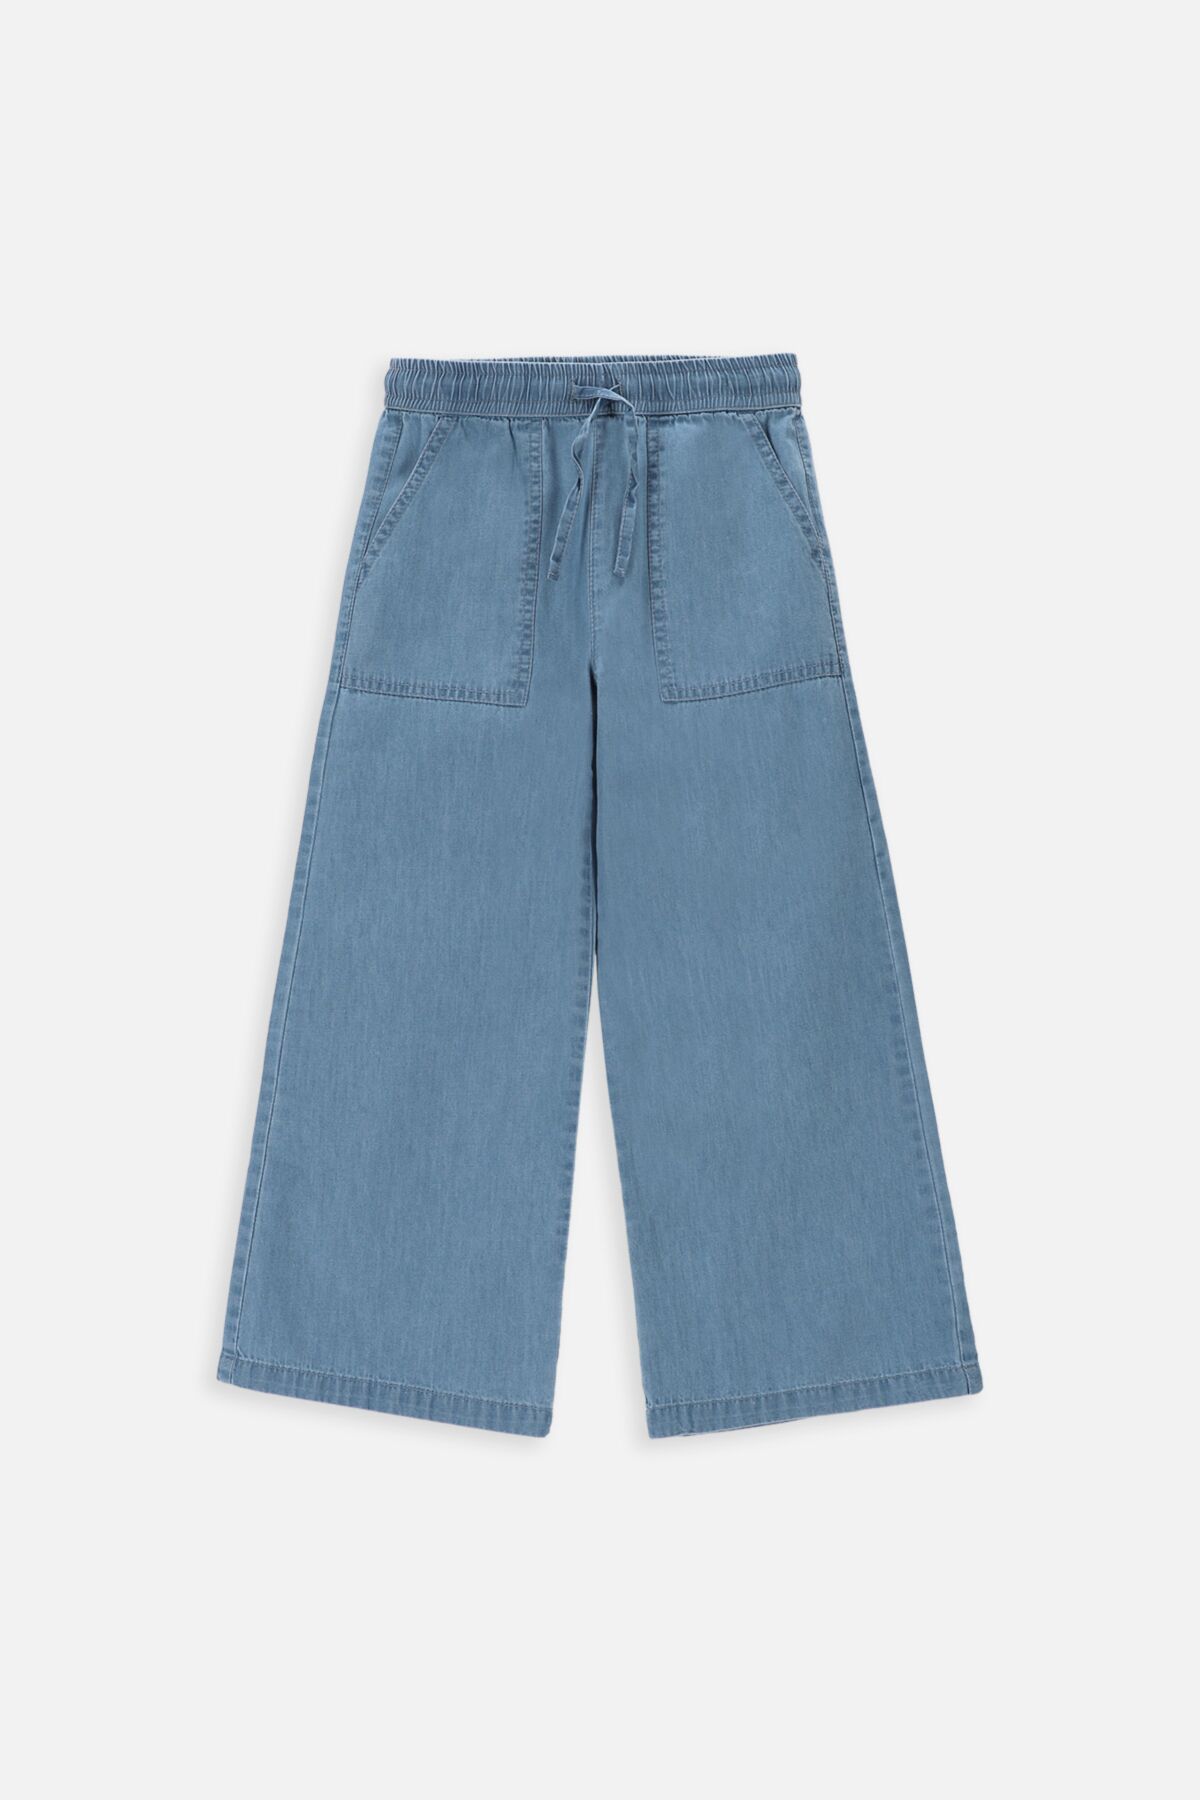 Spodnie jeansowe niebieskie rozszerzane z kieszeniami 2235327